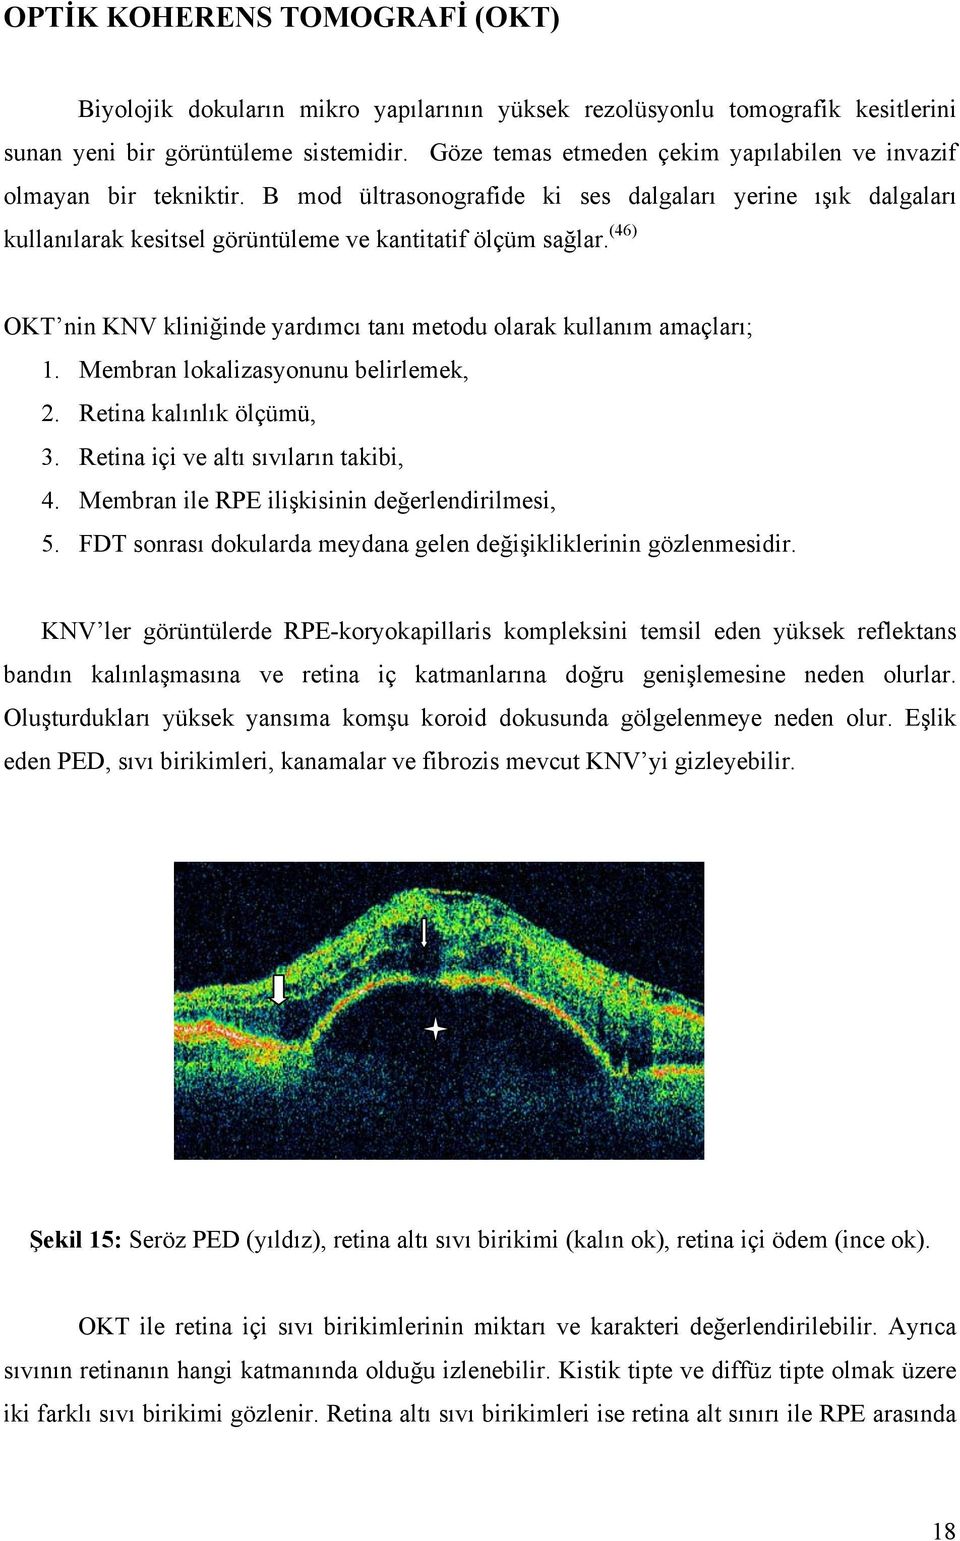 (46) OKT nin KNV kliniğinde yardımcı tanı metodu olarak kullanım amaçları; 1. Membran lokalizasyonunu belirlemek, 2. Retina kalınlık ölçümü, 3. Retina içi ve altı sıvıların takibi, 4.